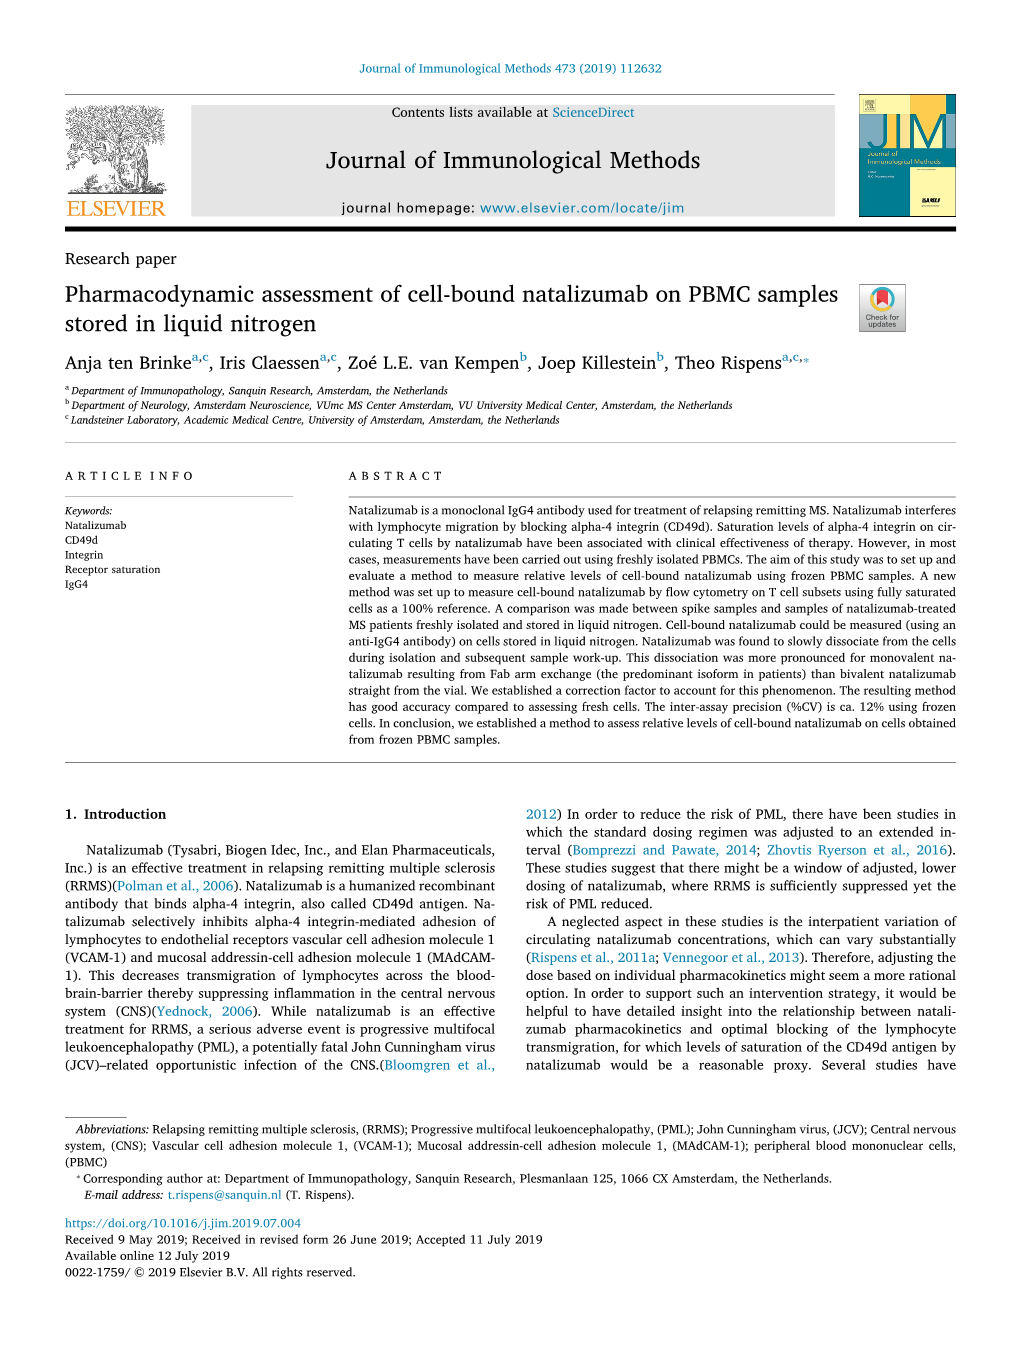 Journal of Immunological Methods Pharmacodynamic Assessment of Cell-Bound Natalizumab on PBMC Samples Stored in Liquid Nitrogen